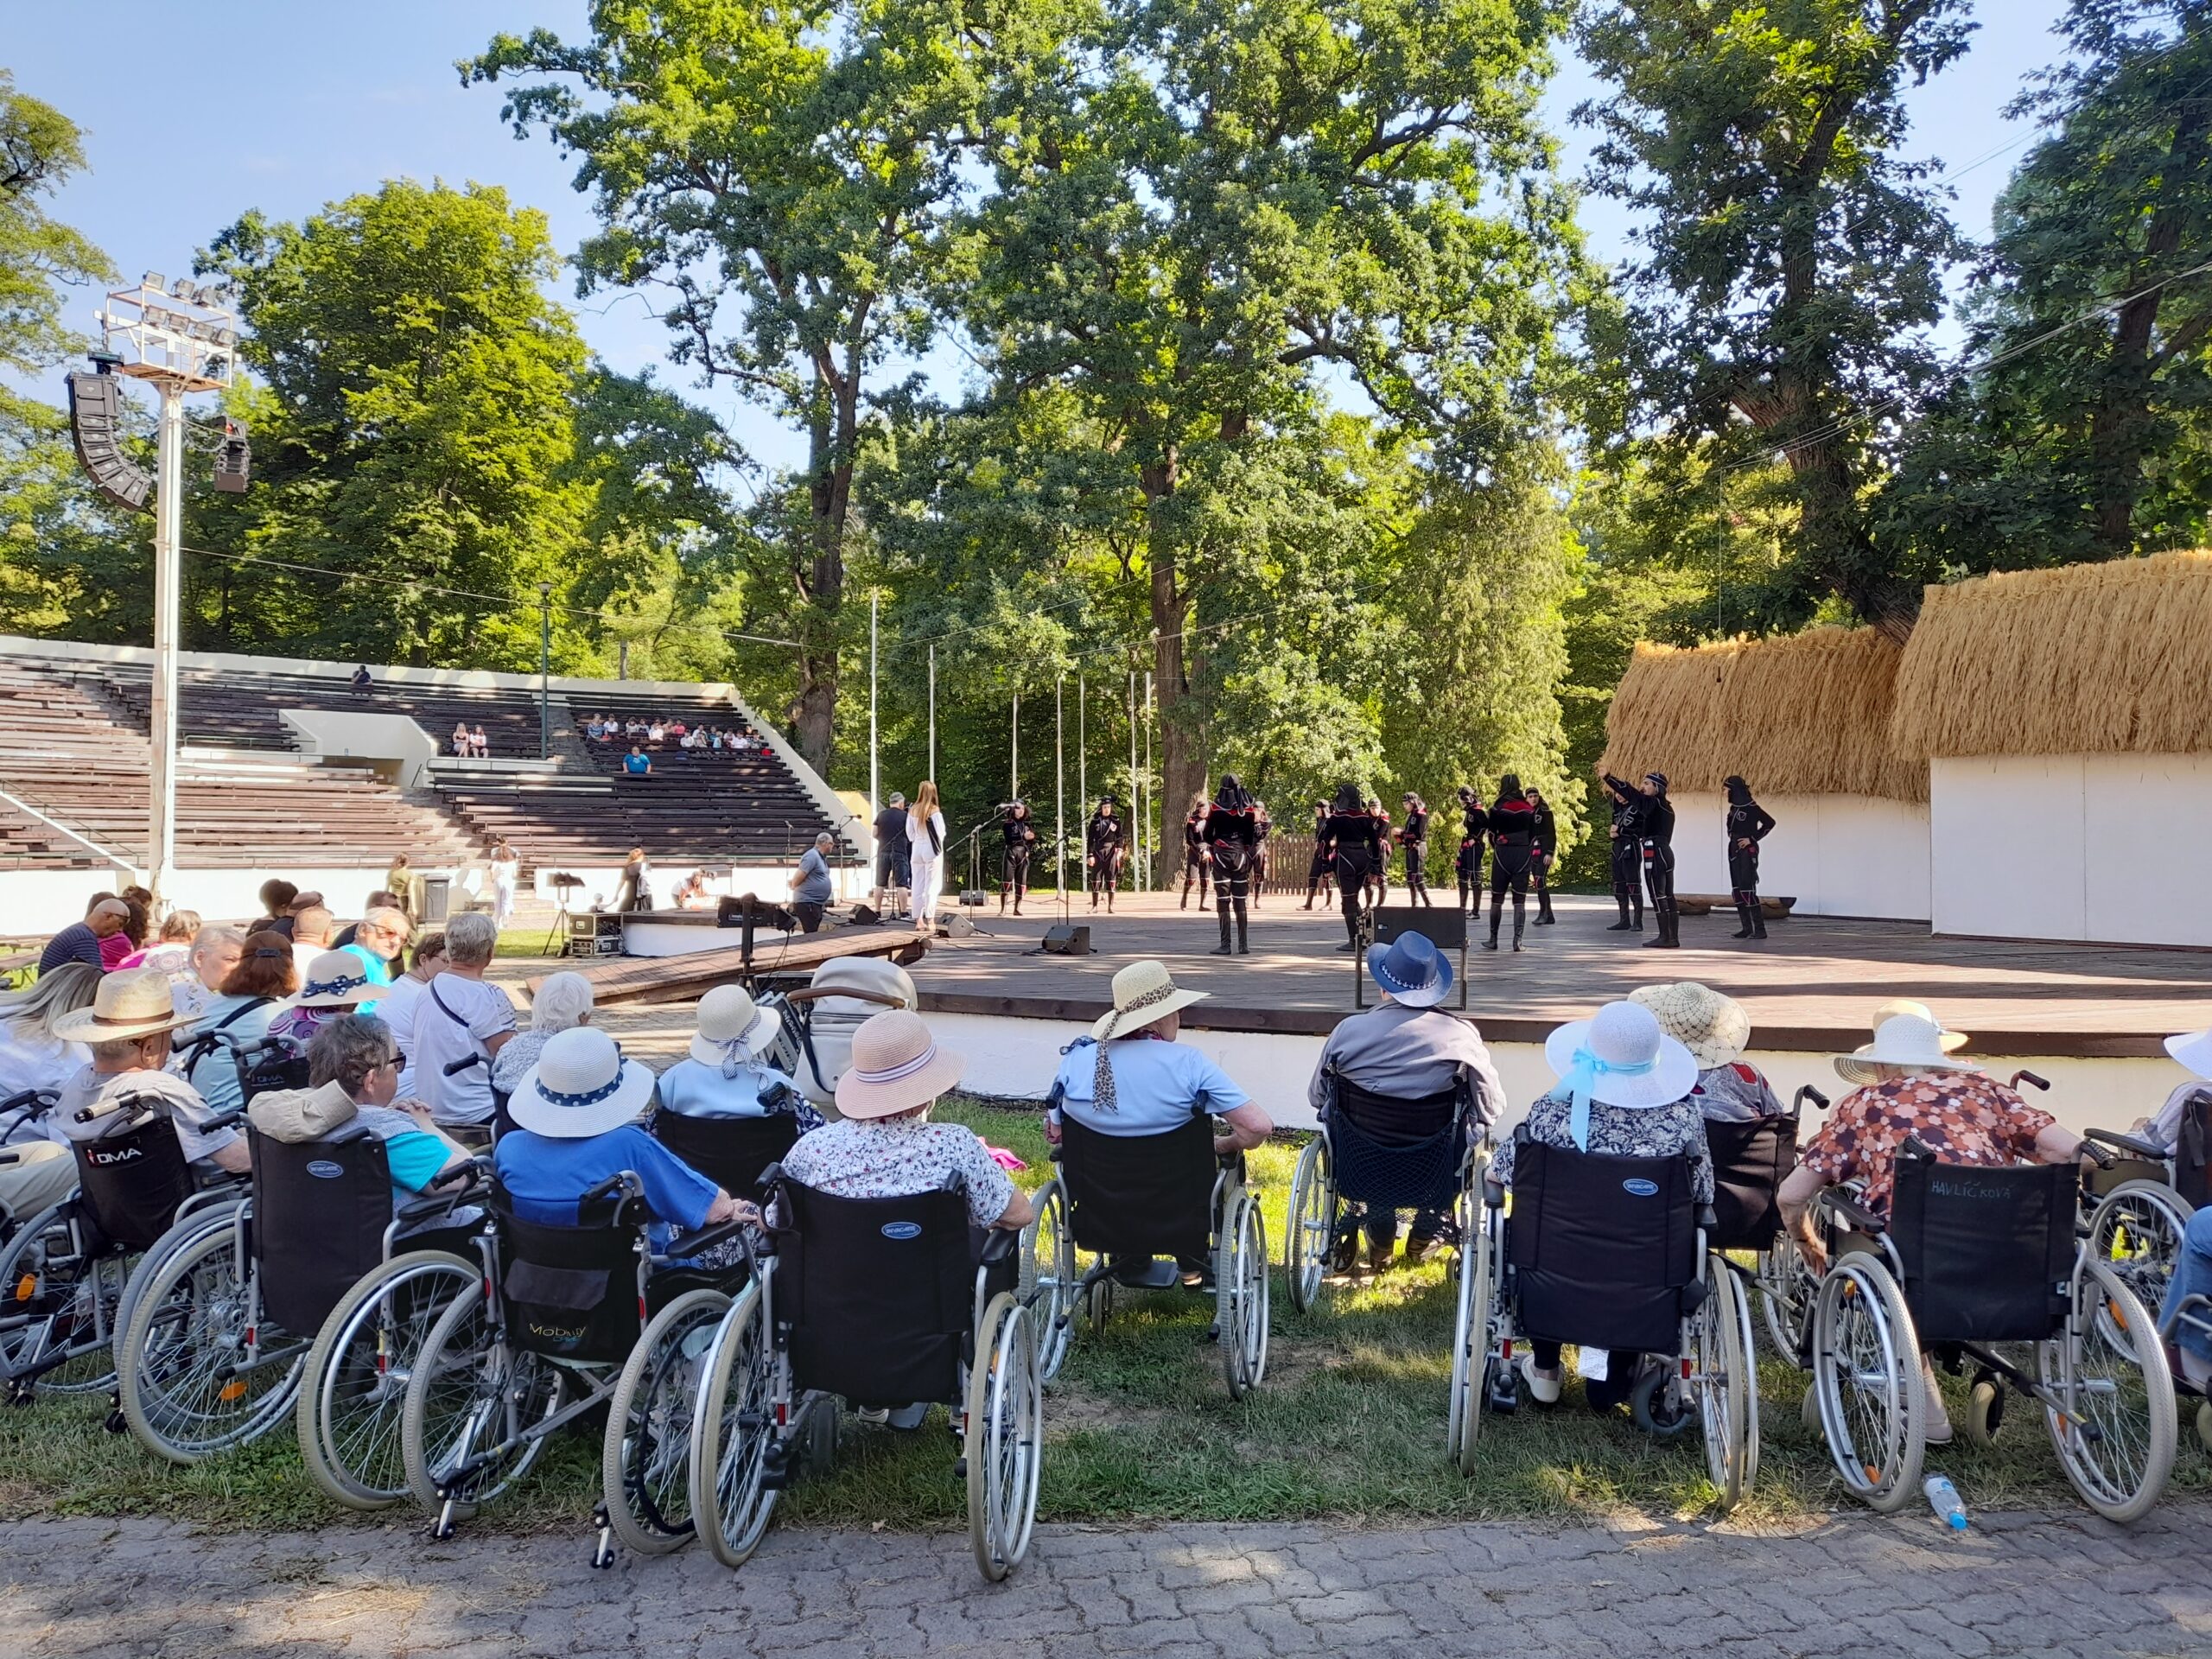 Vystoupení tanečníků z Gruzie na folklorním festivalu, uživatelé v parku